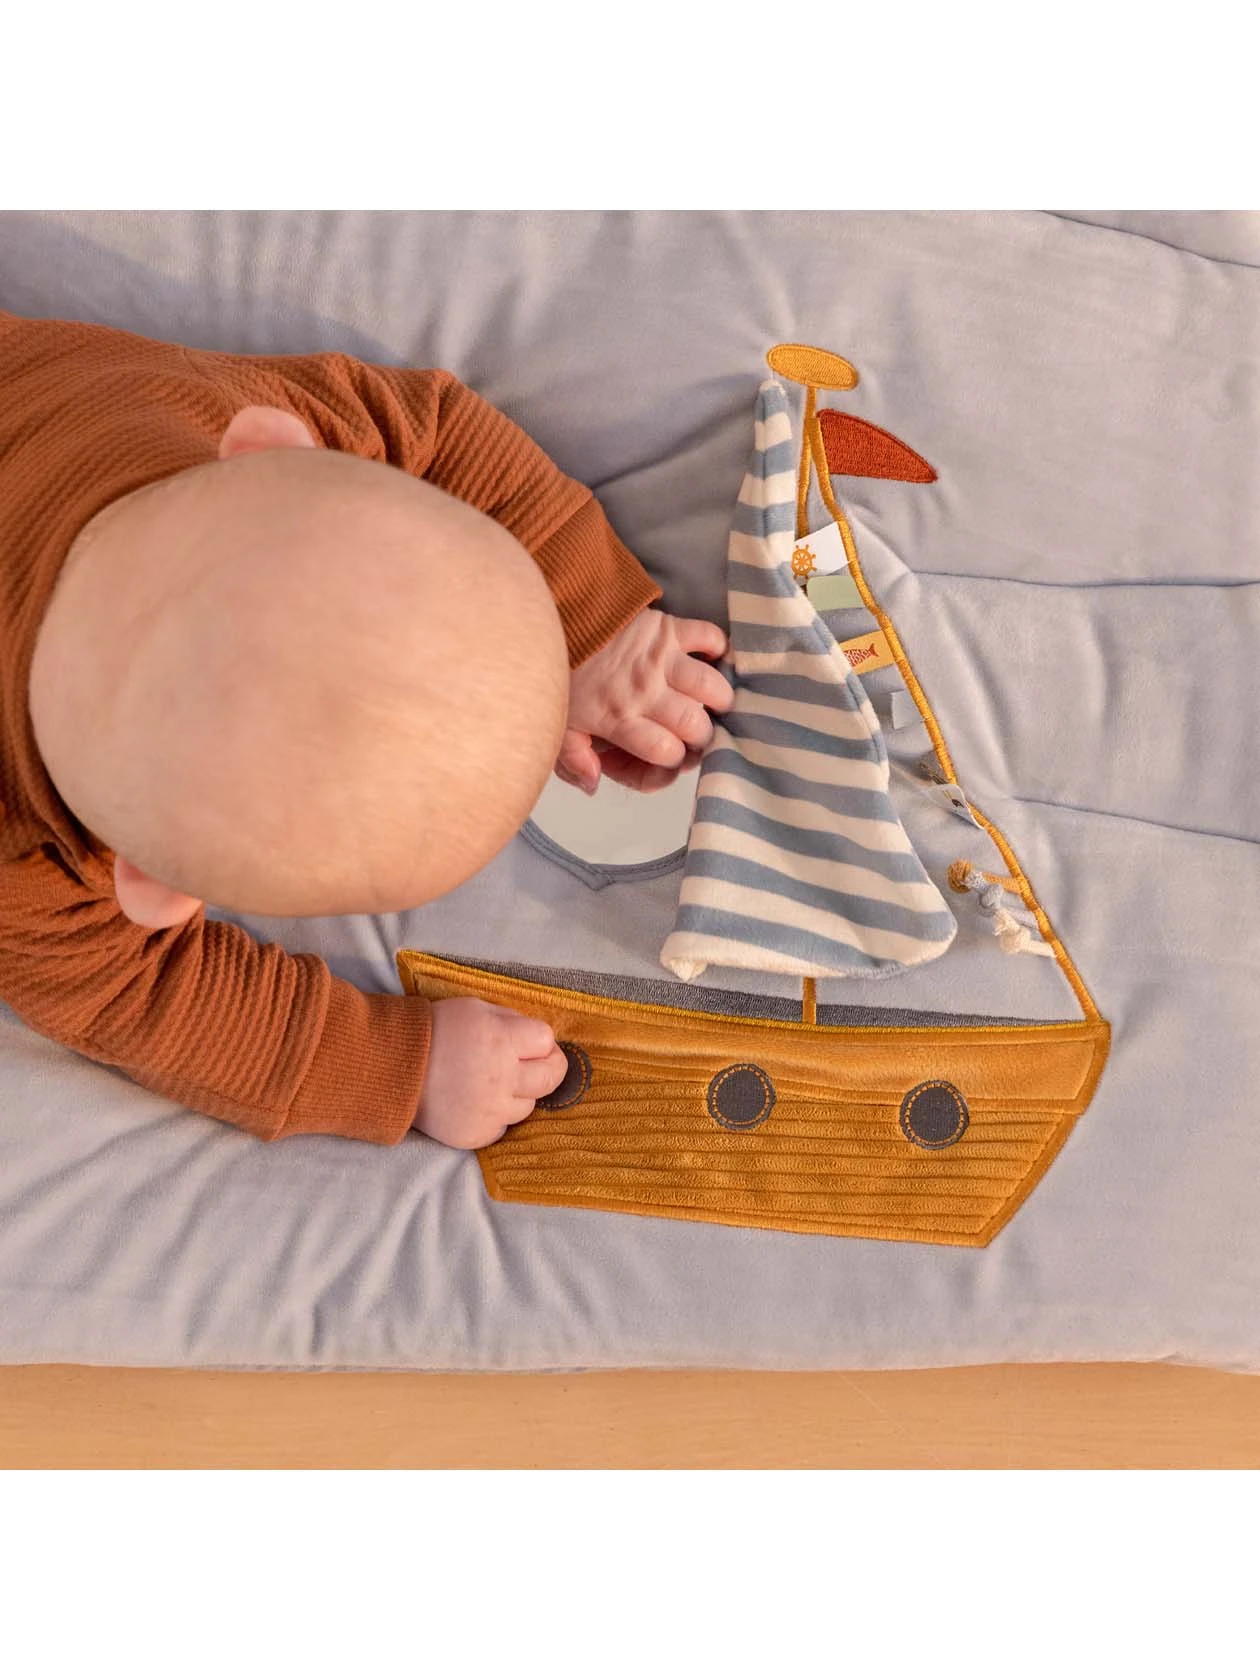 Maluszek bawi elementem w kształcie łódki na macie aktywizującej z serii Sailors Bay od Little Dutch.